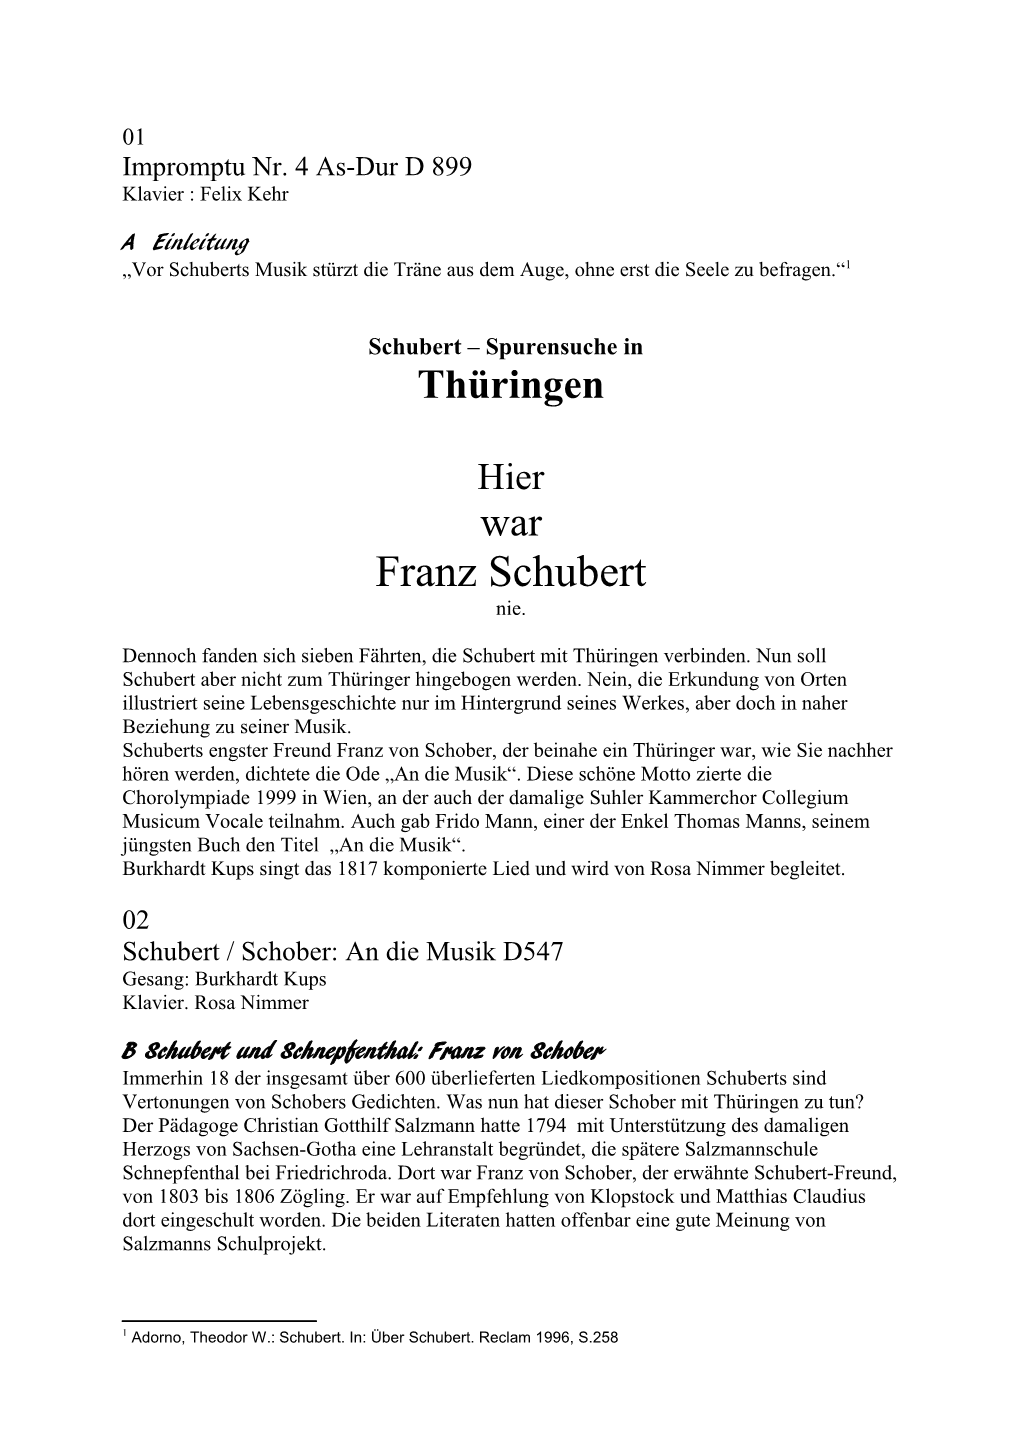 Franz Schubert – Spurensuche in Thüringen